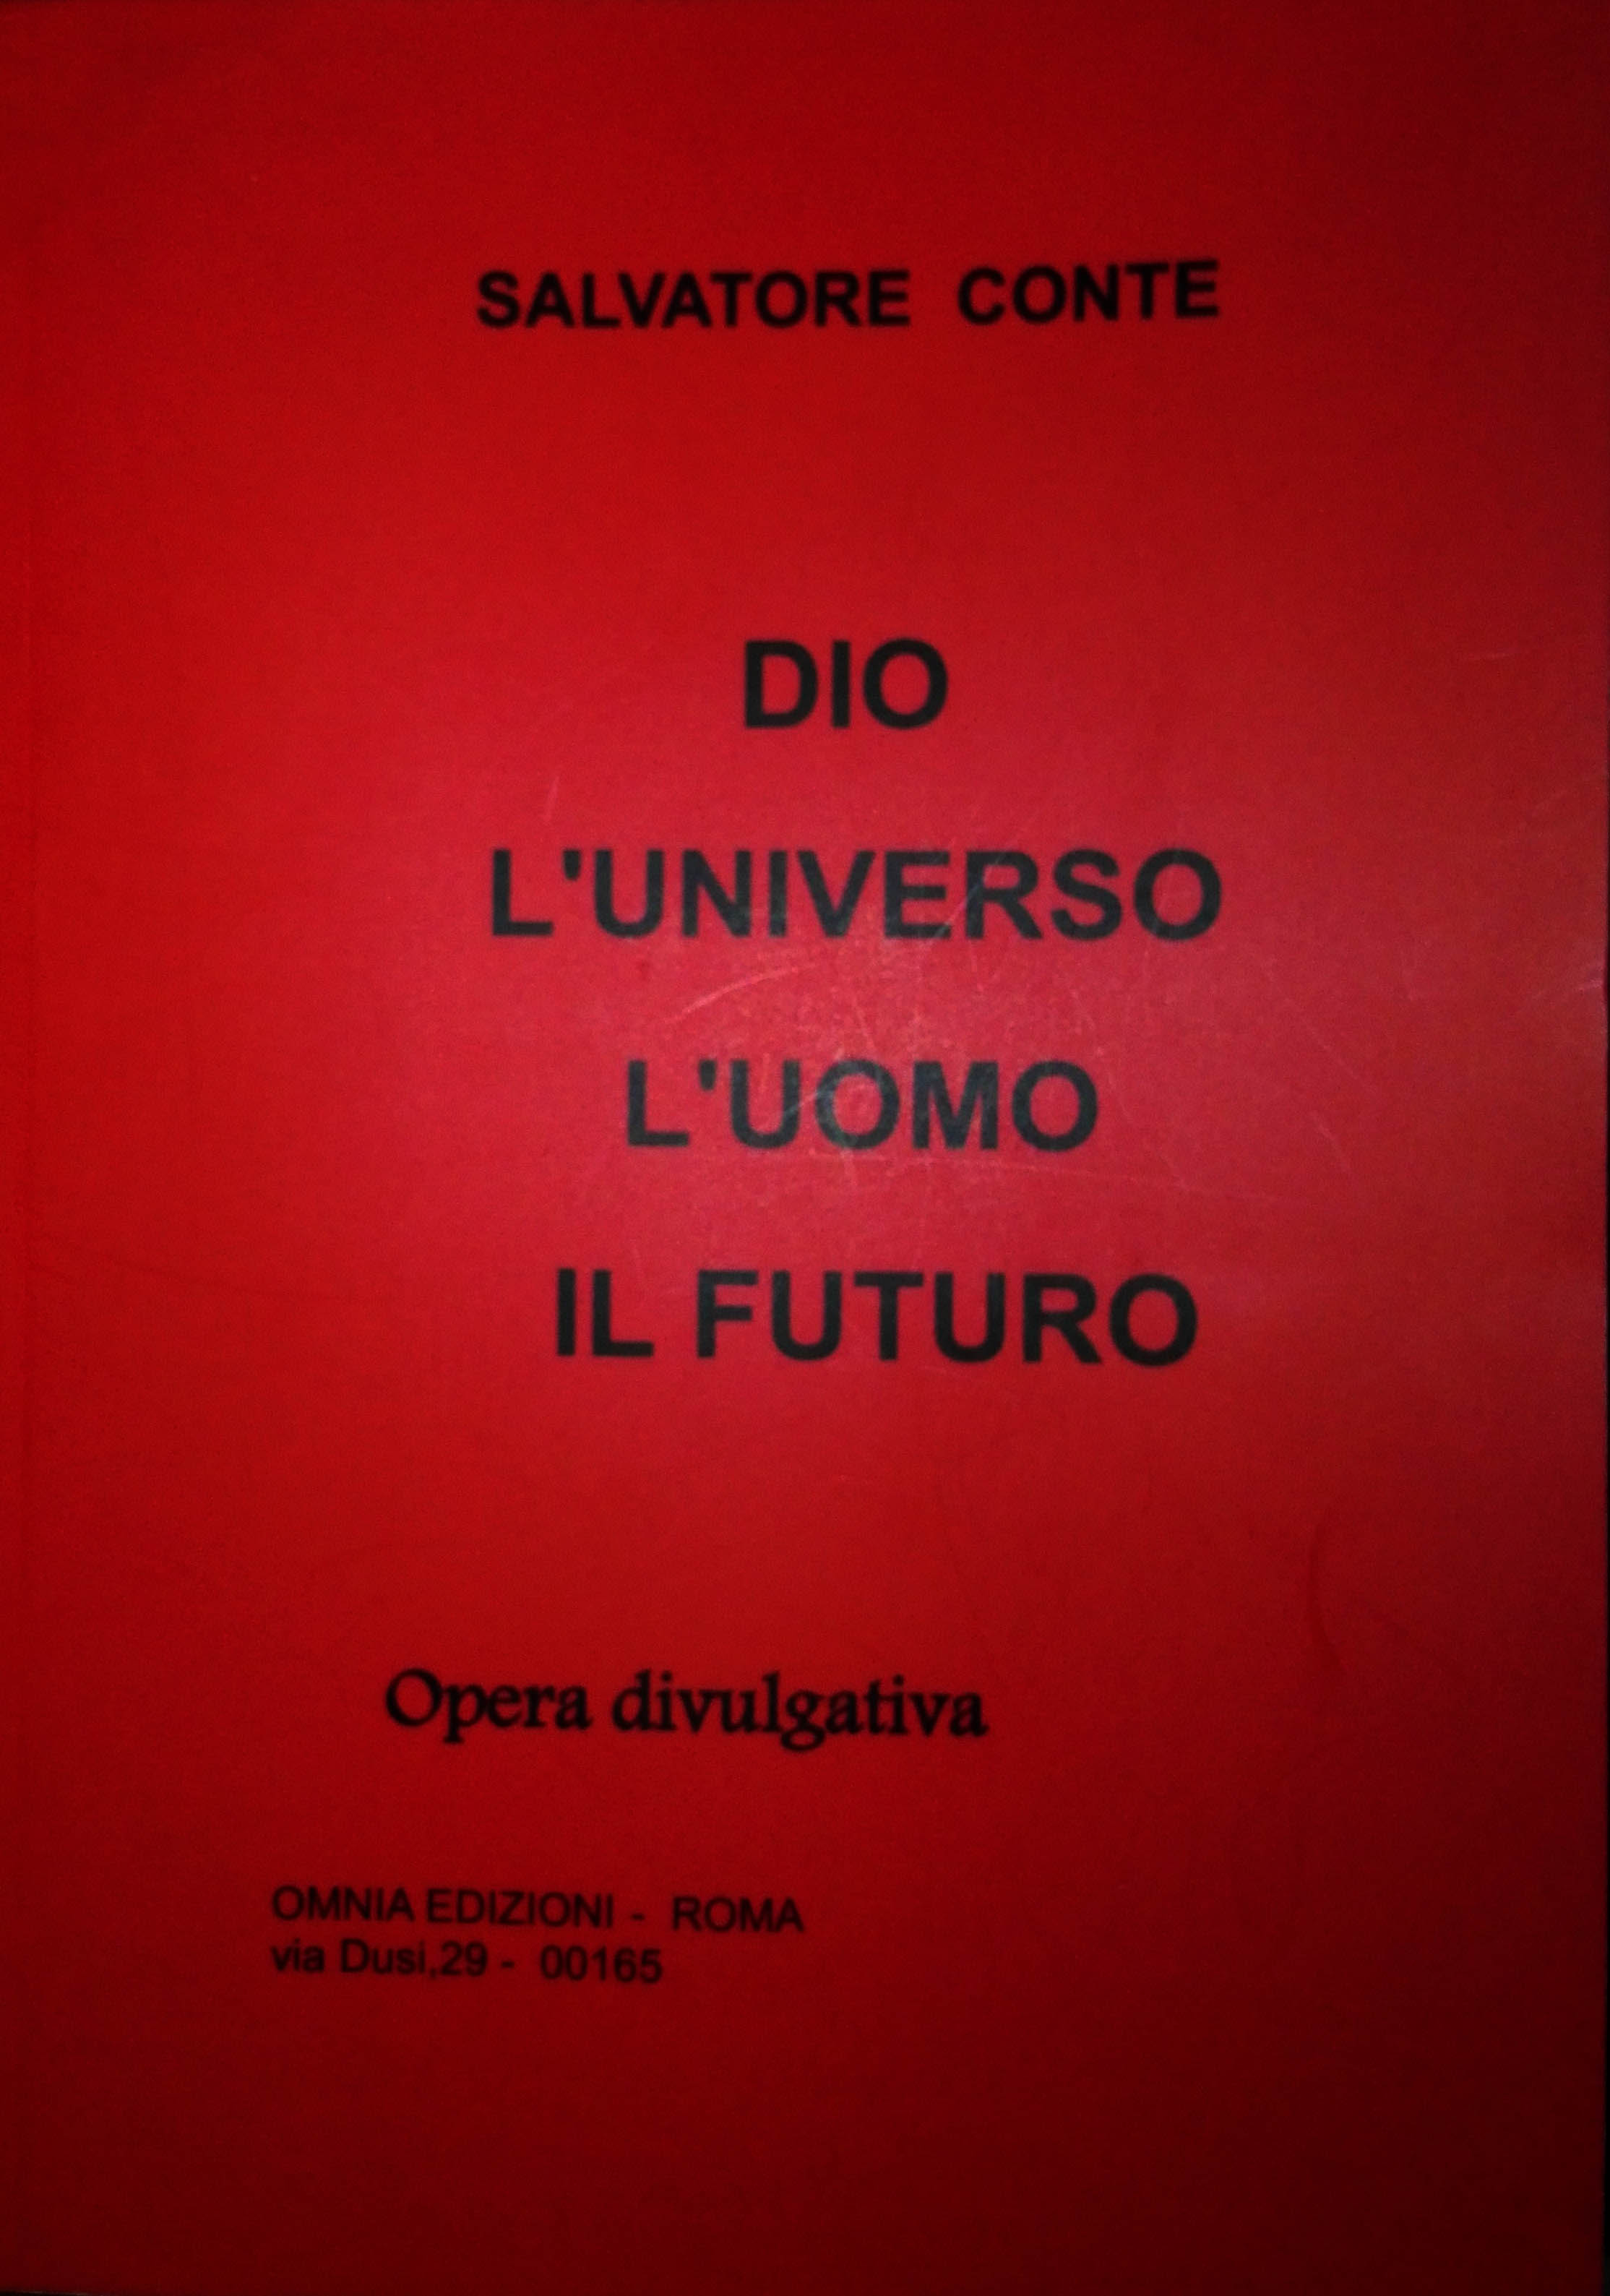 Copertina del libro di Don Salvatore Conte